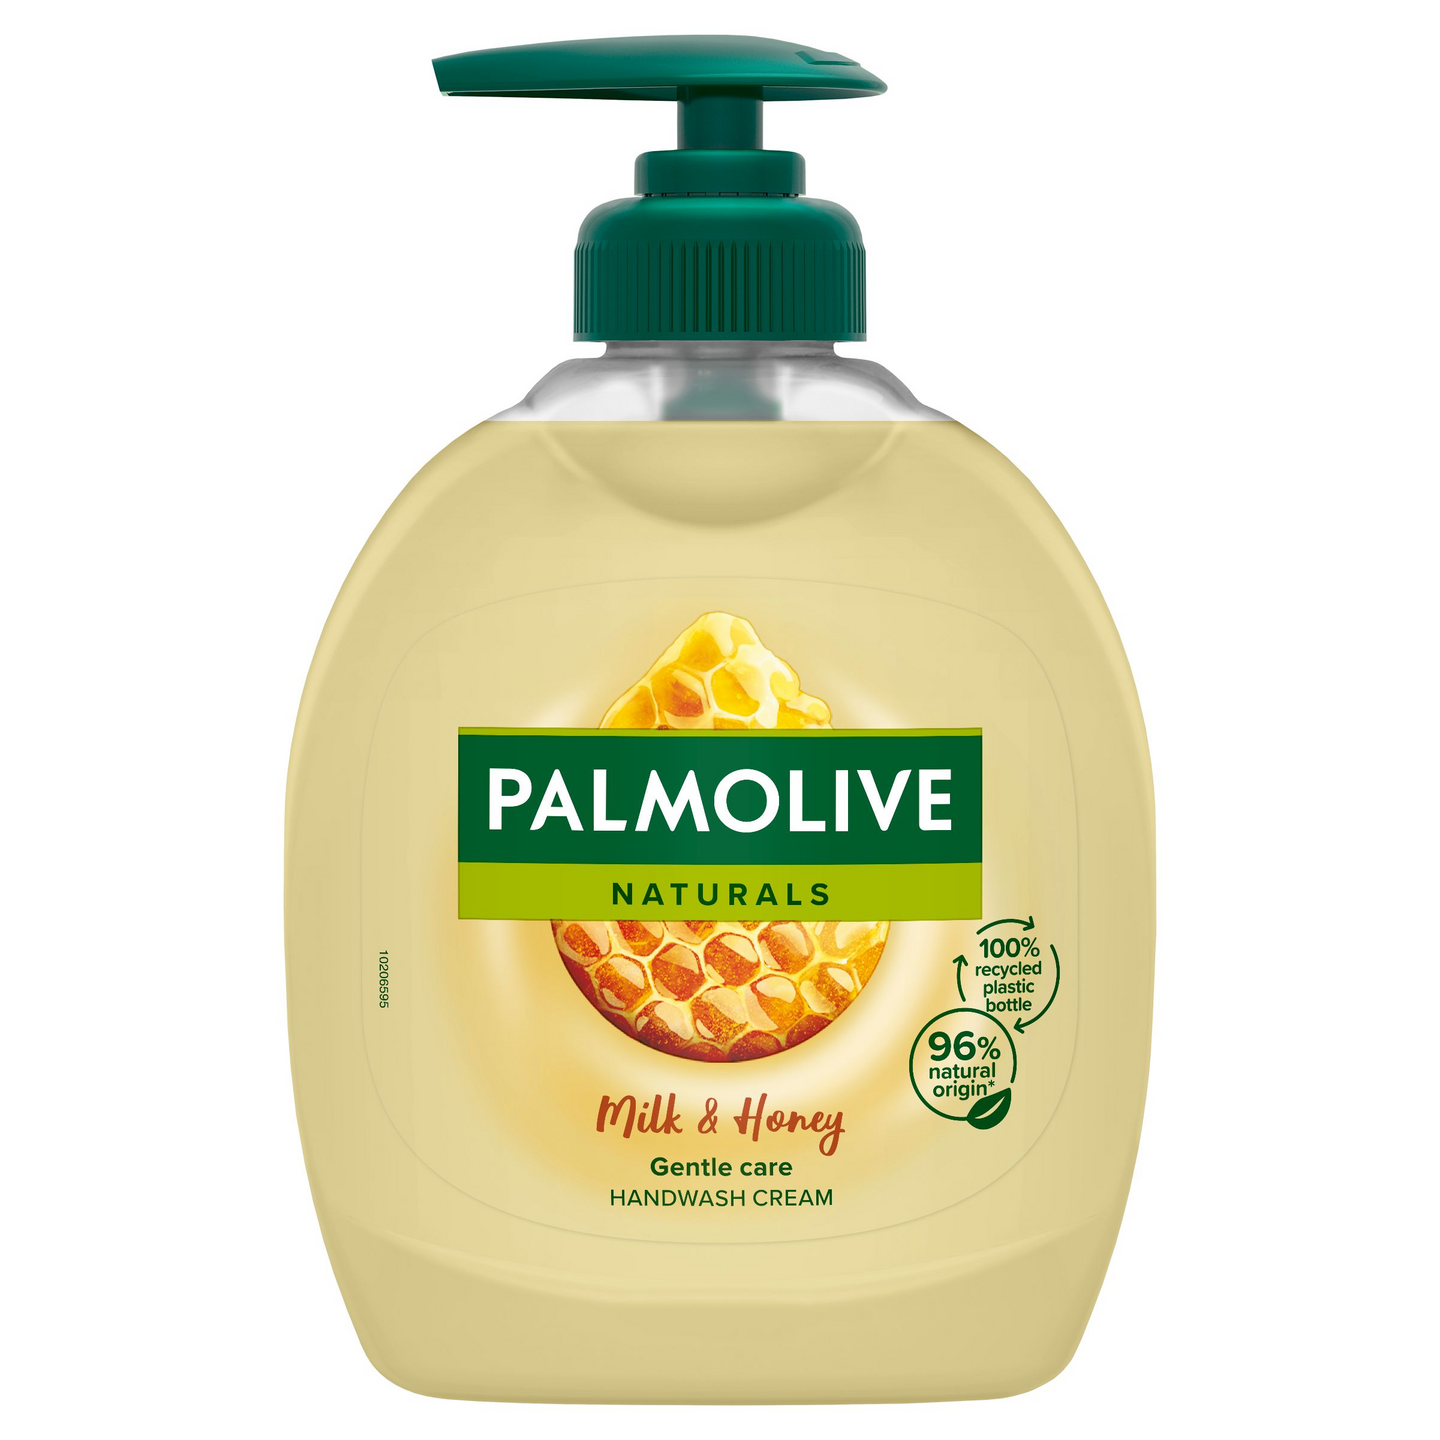 Palmolive Naturals nestesaippua 300ml Milk & Honey